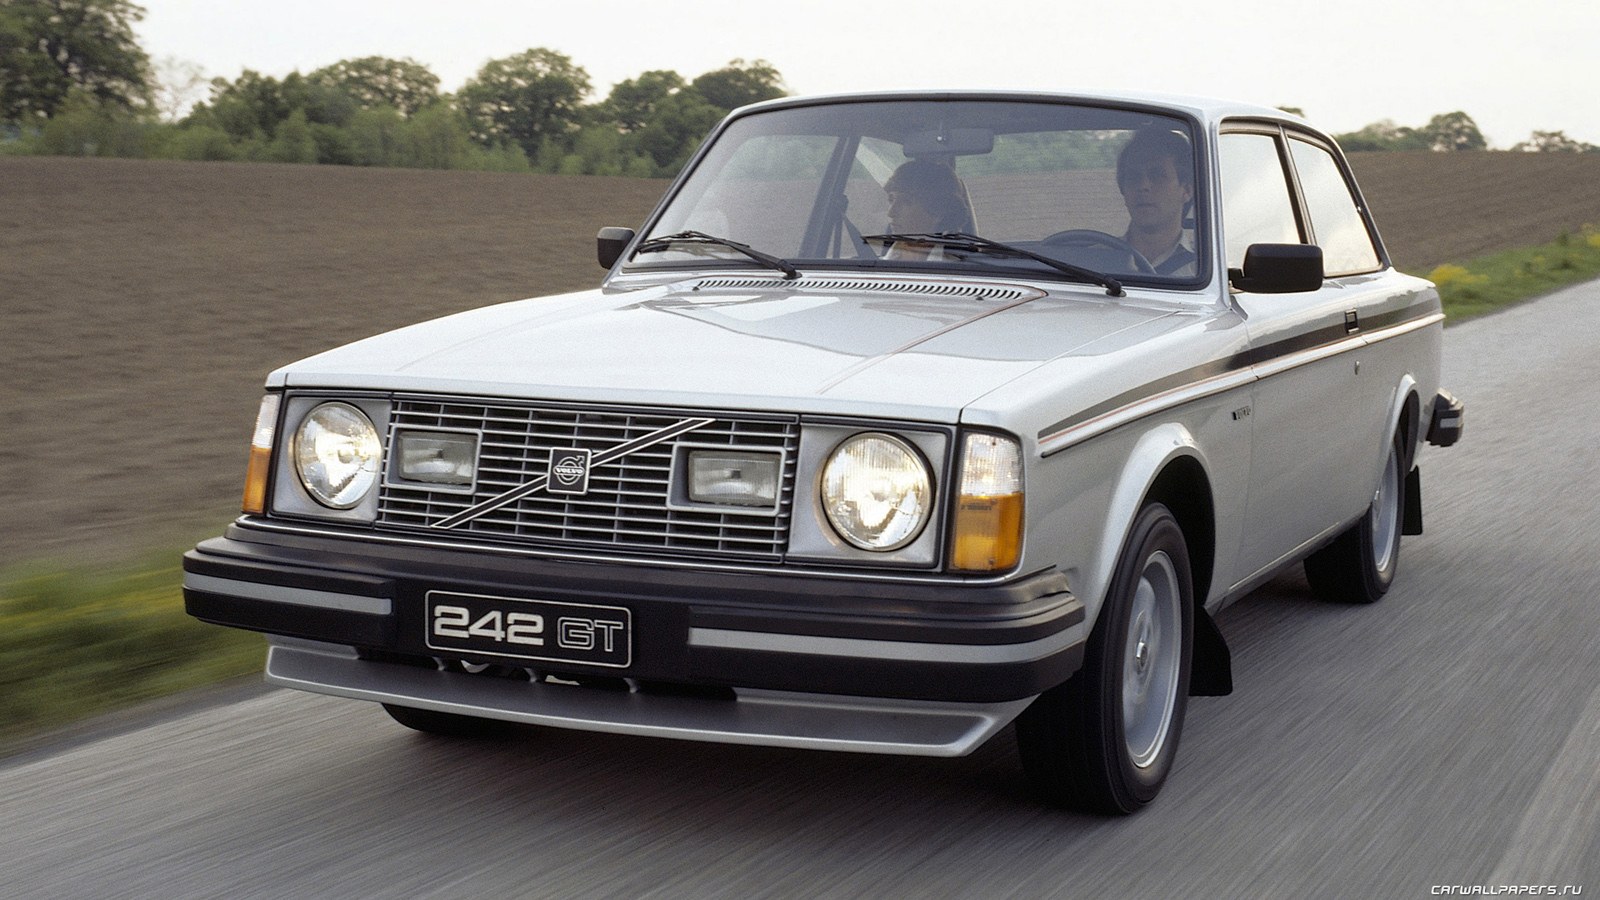 Volvo -242-GT-1978-1981- 1600x900-001.jpg